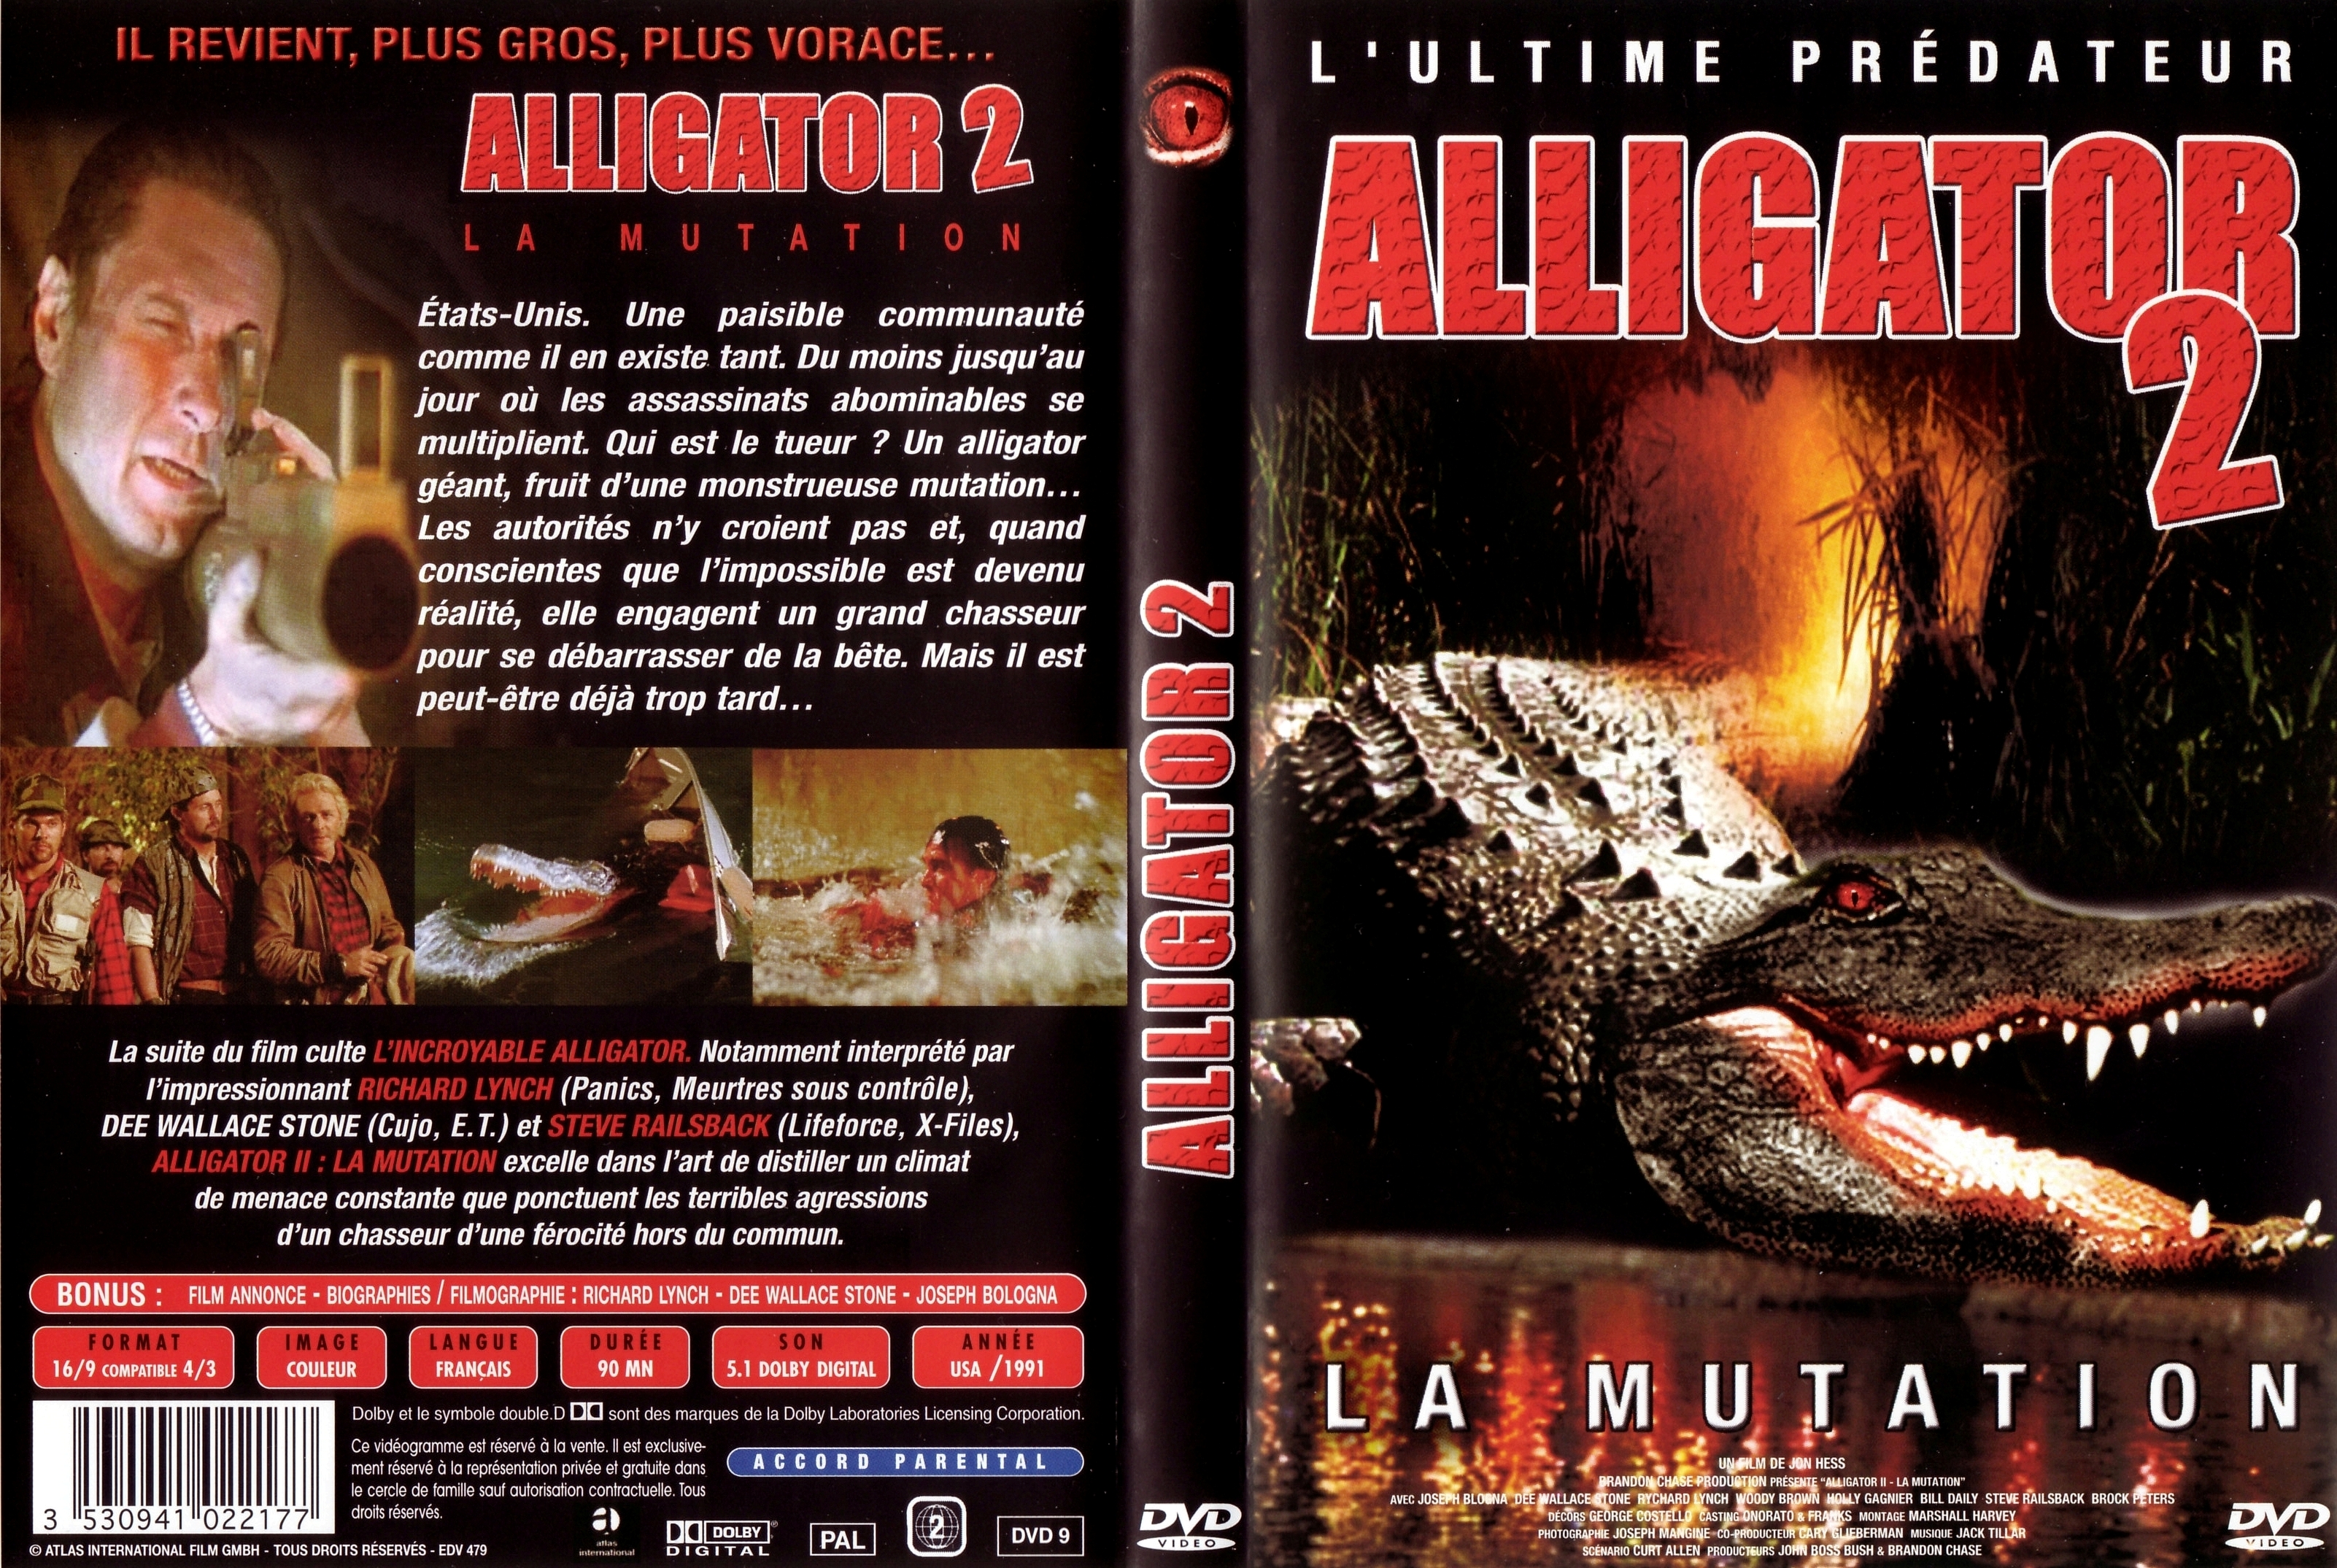 Jaquette DVD Alligator 2 v2